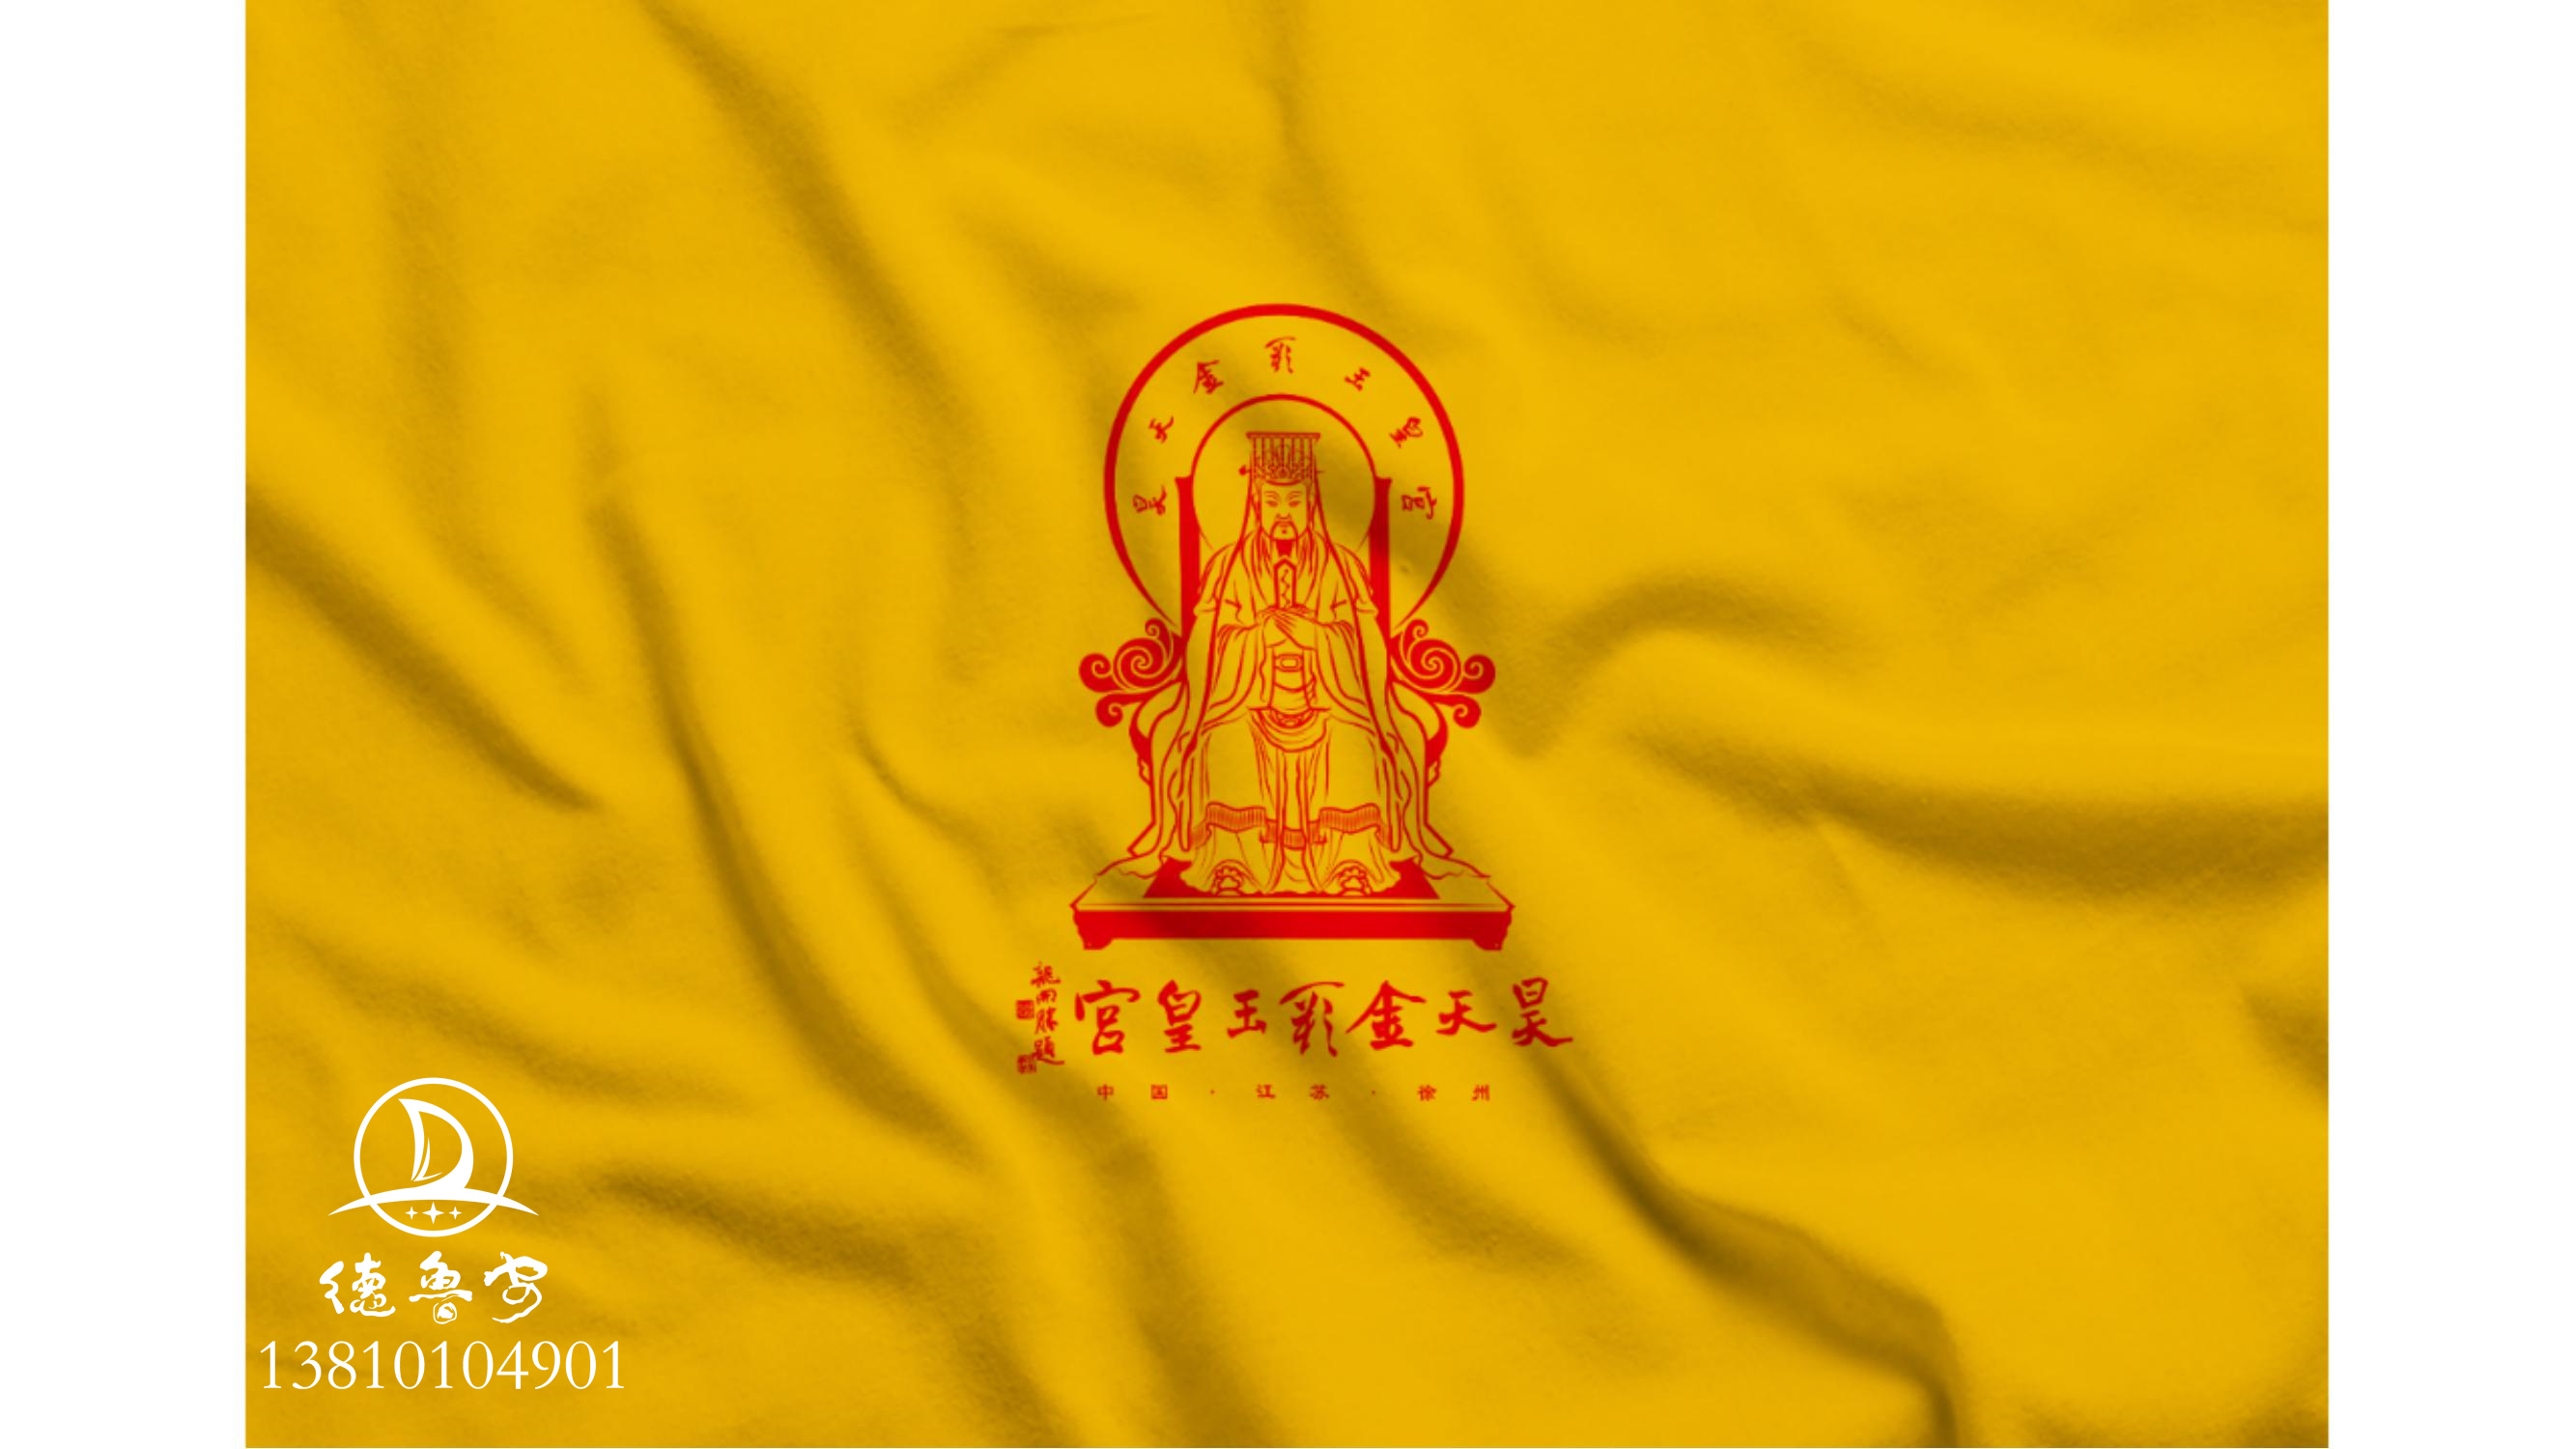 玉皇宫 logo定稿方案_36.jpg